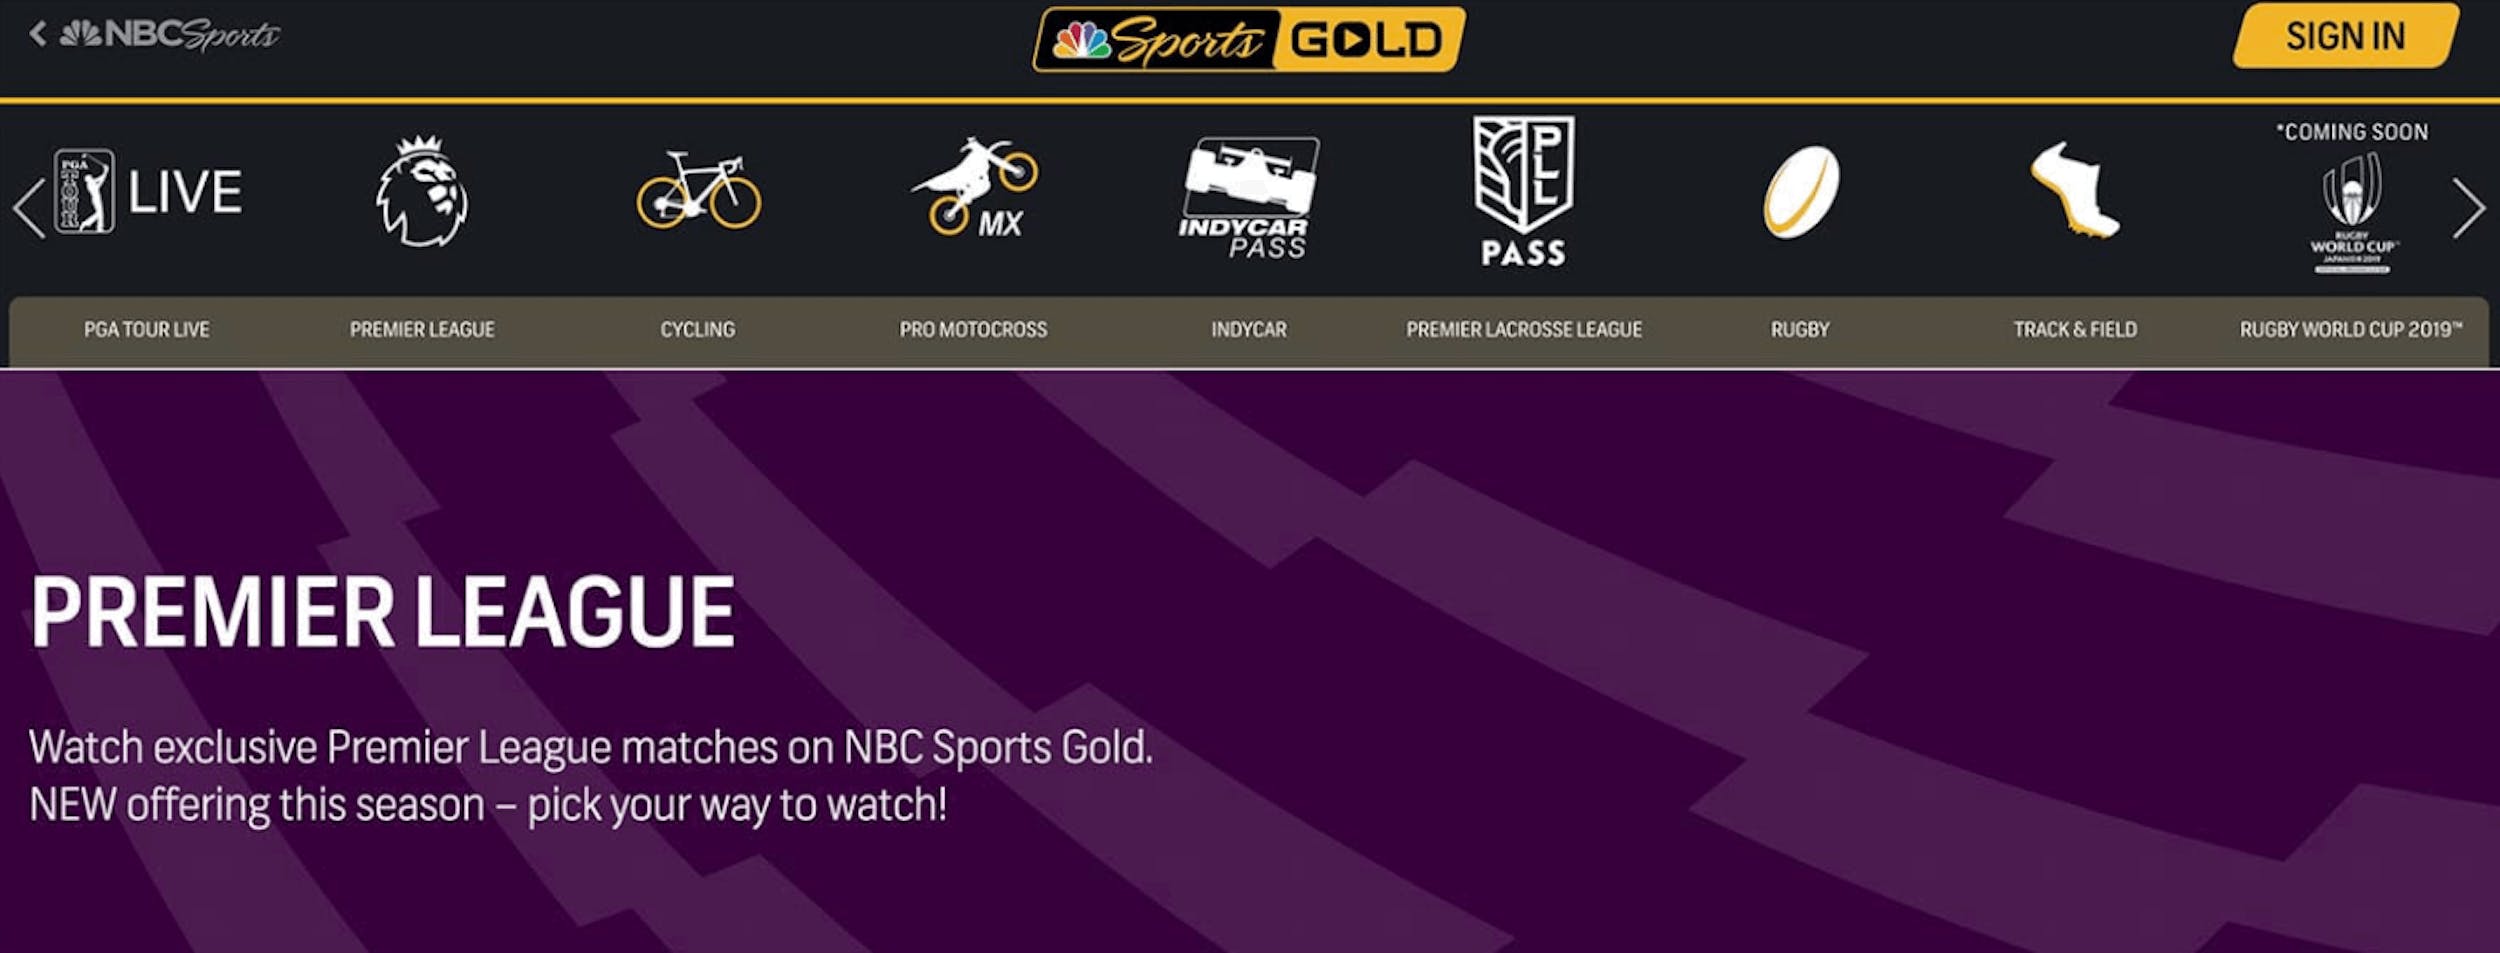 liverpool vs brighton live stream nbc sports gold